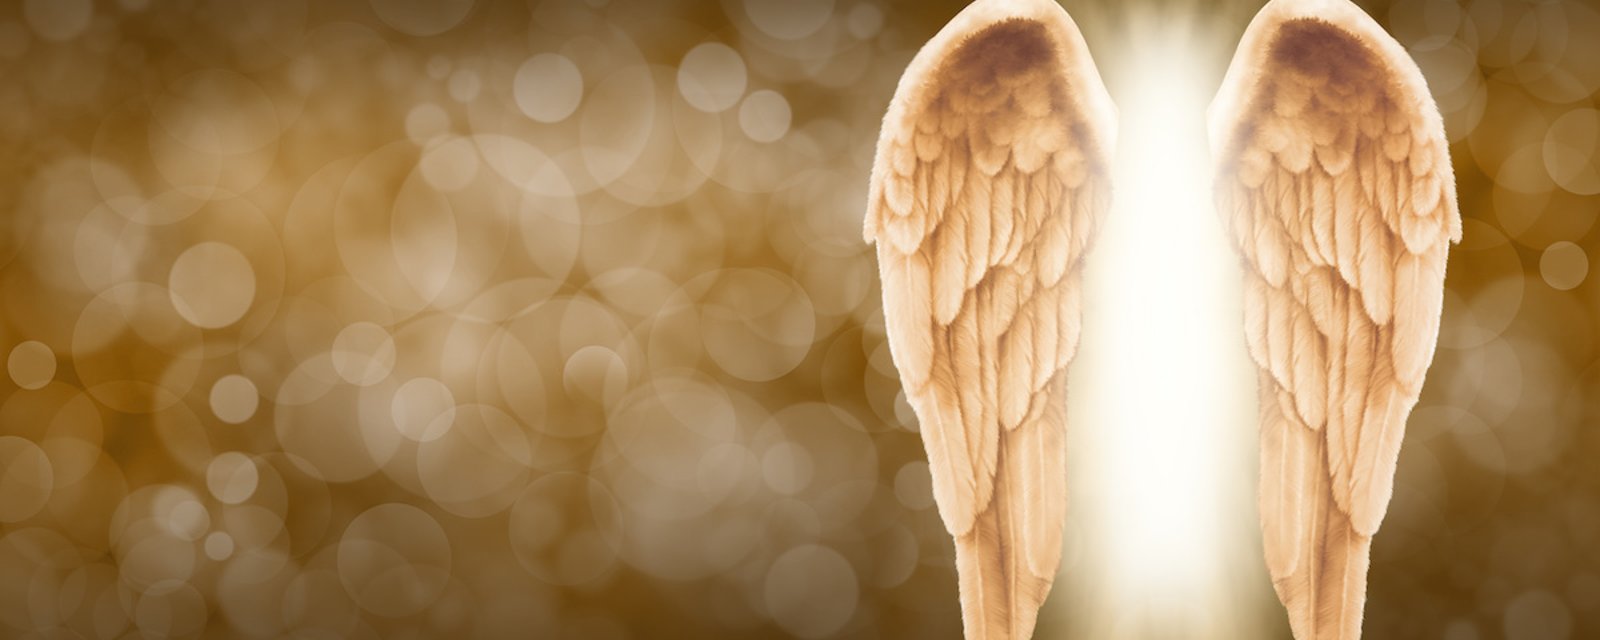 6 signes indiquant que votre ange gardien veut vous contacter